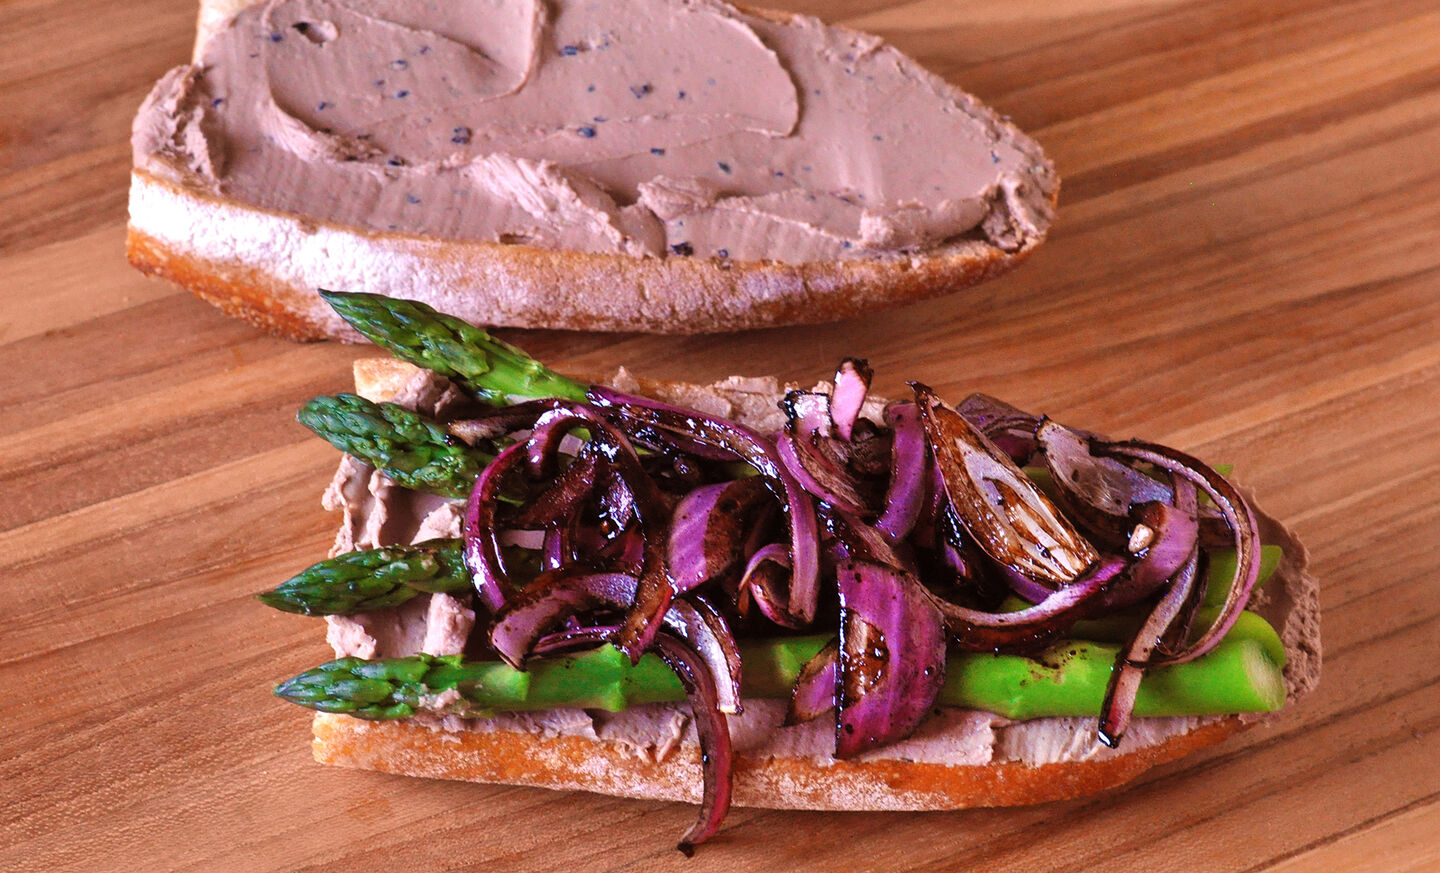 Liver Mousse Sandwich with Asparagus & Balsamic Onions | D'Artagnan